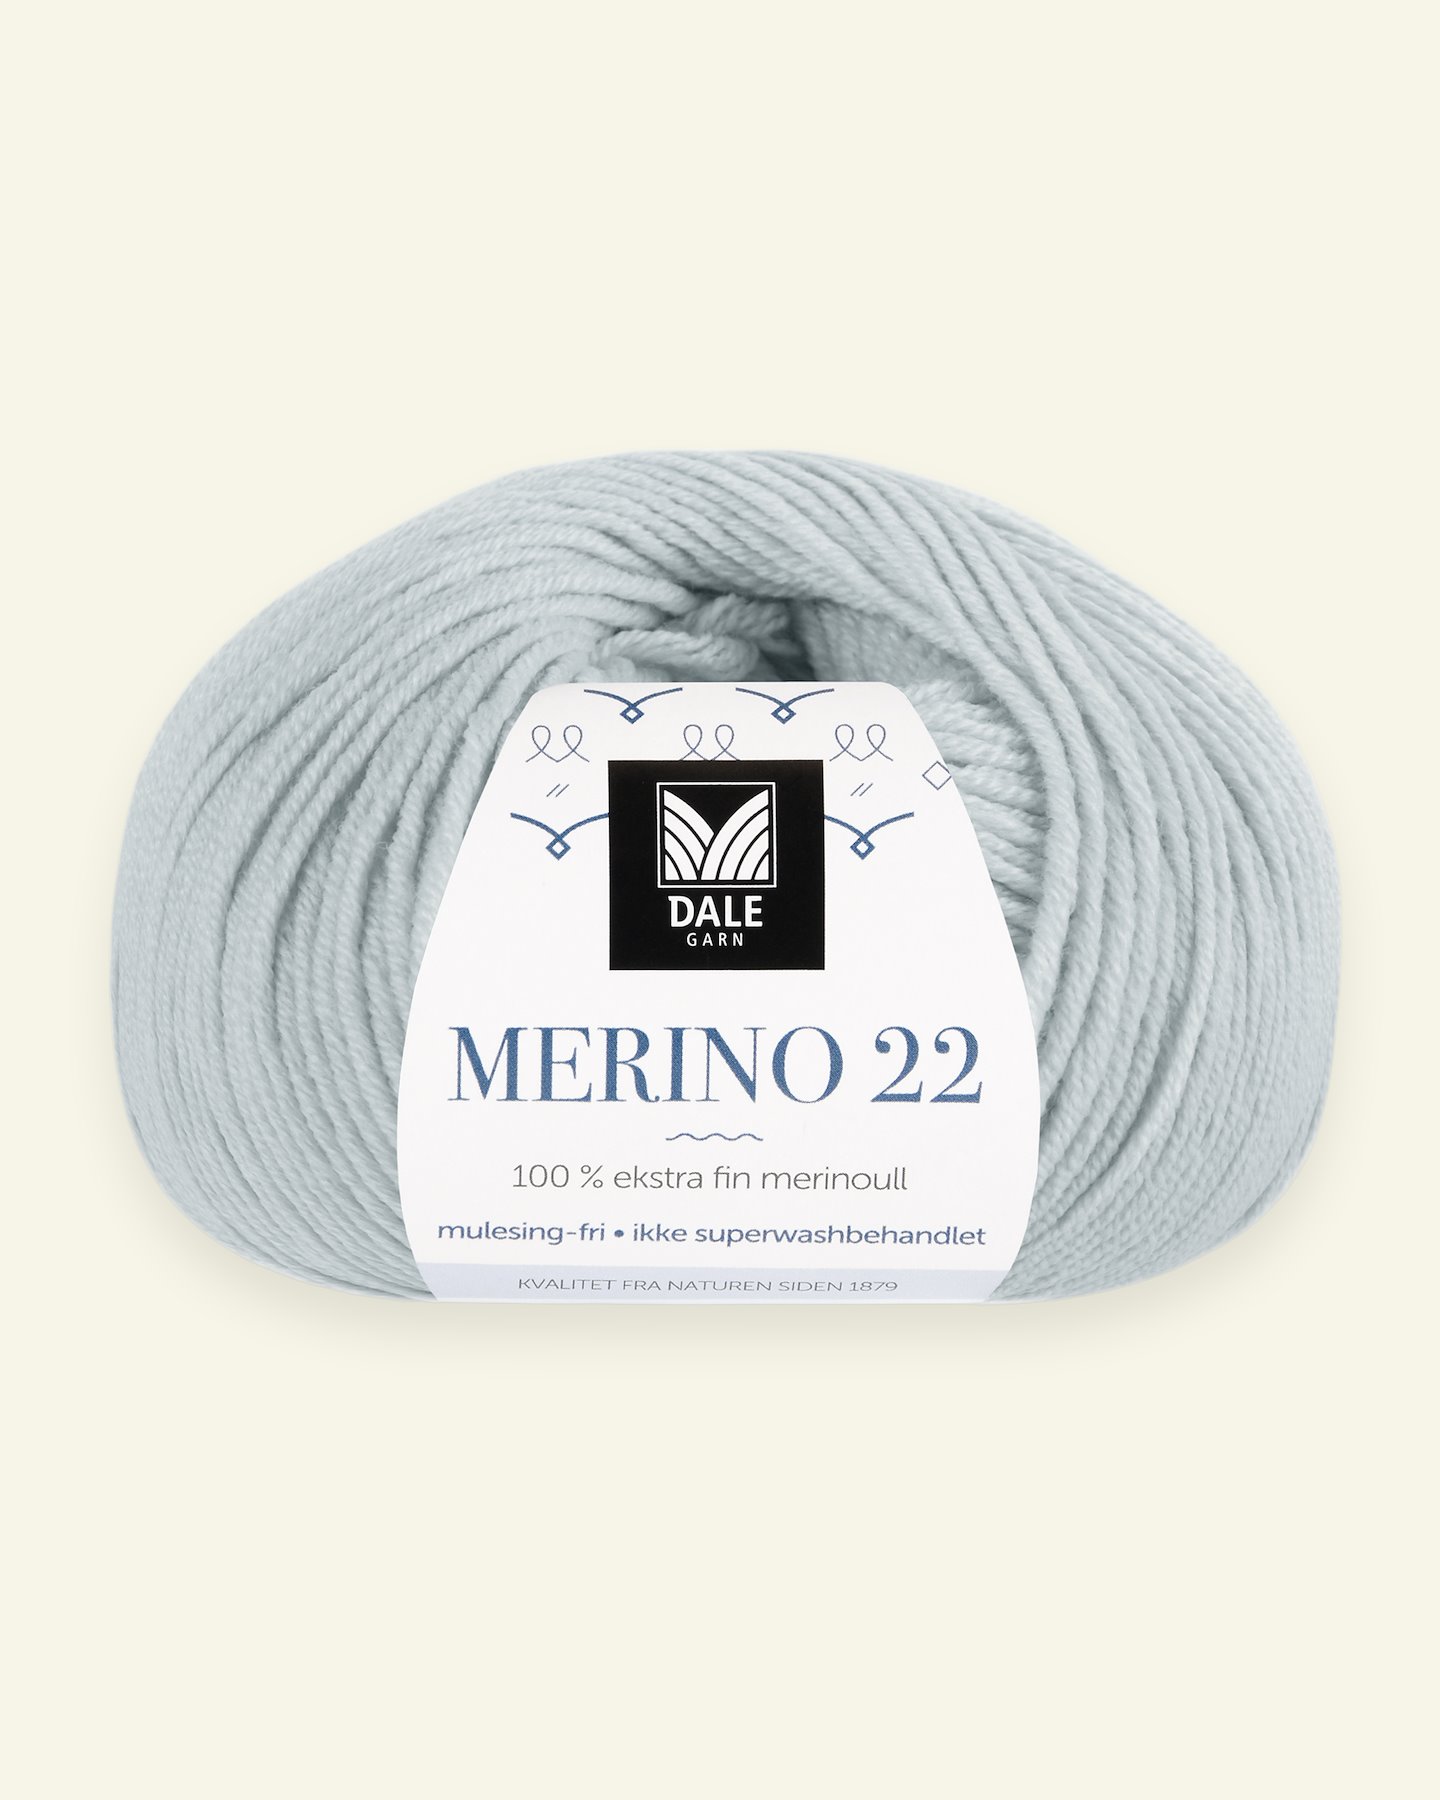 Dale Garn, 100% extra fine merino wool yarn, "Merino 22", dusty light blue (2012) 90000373_pack